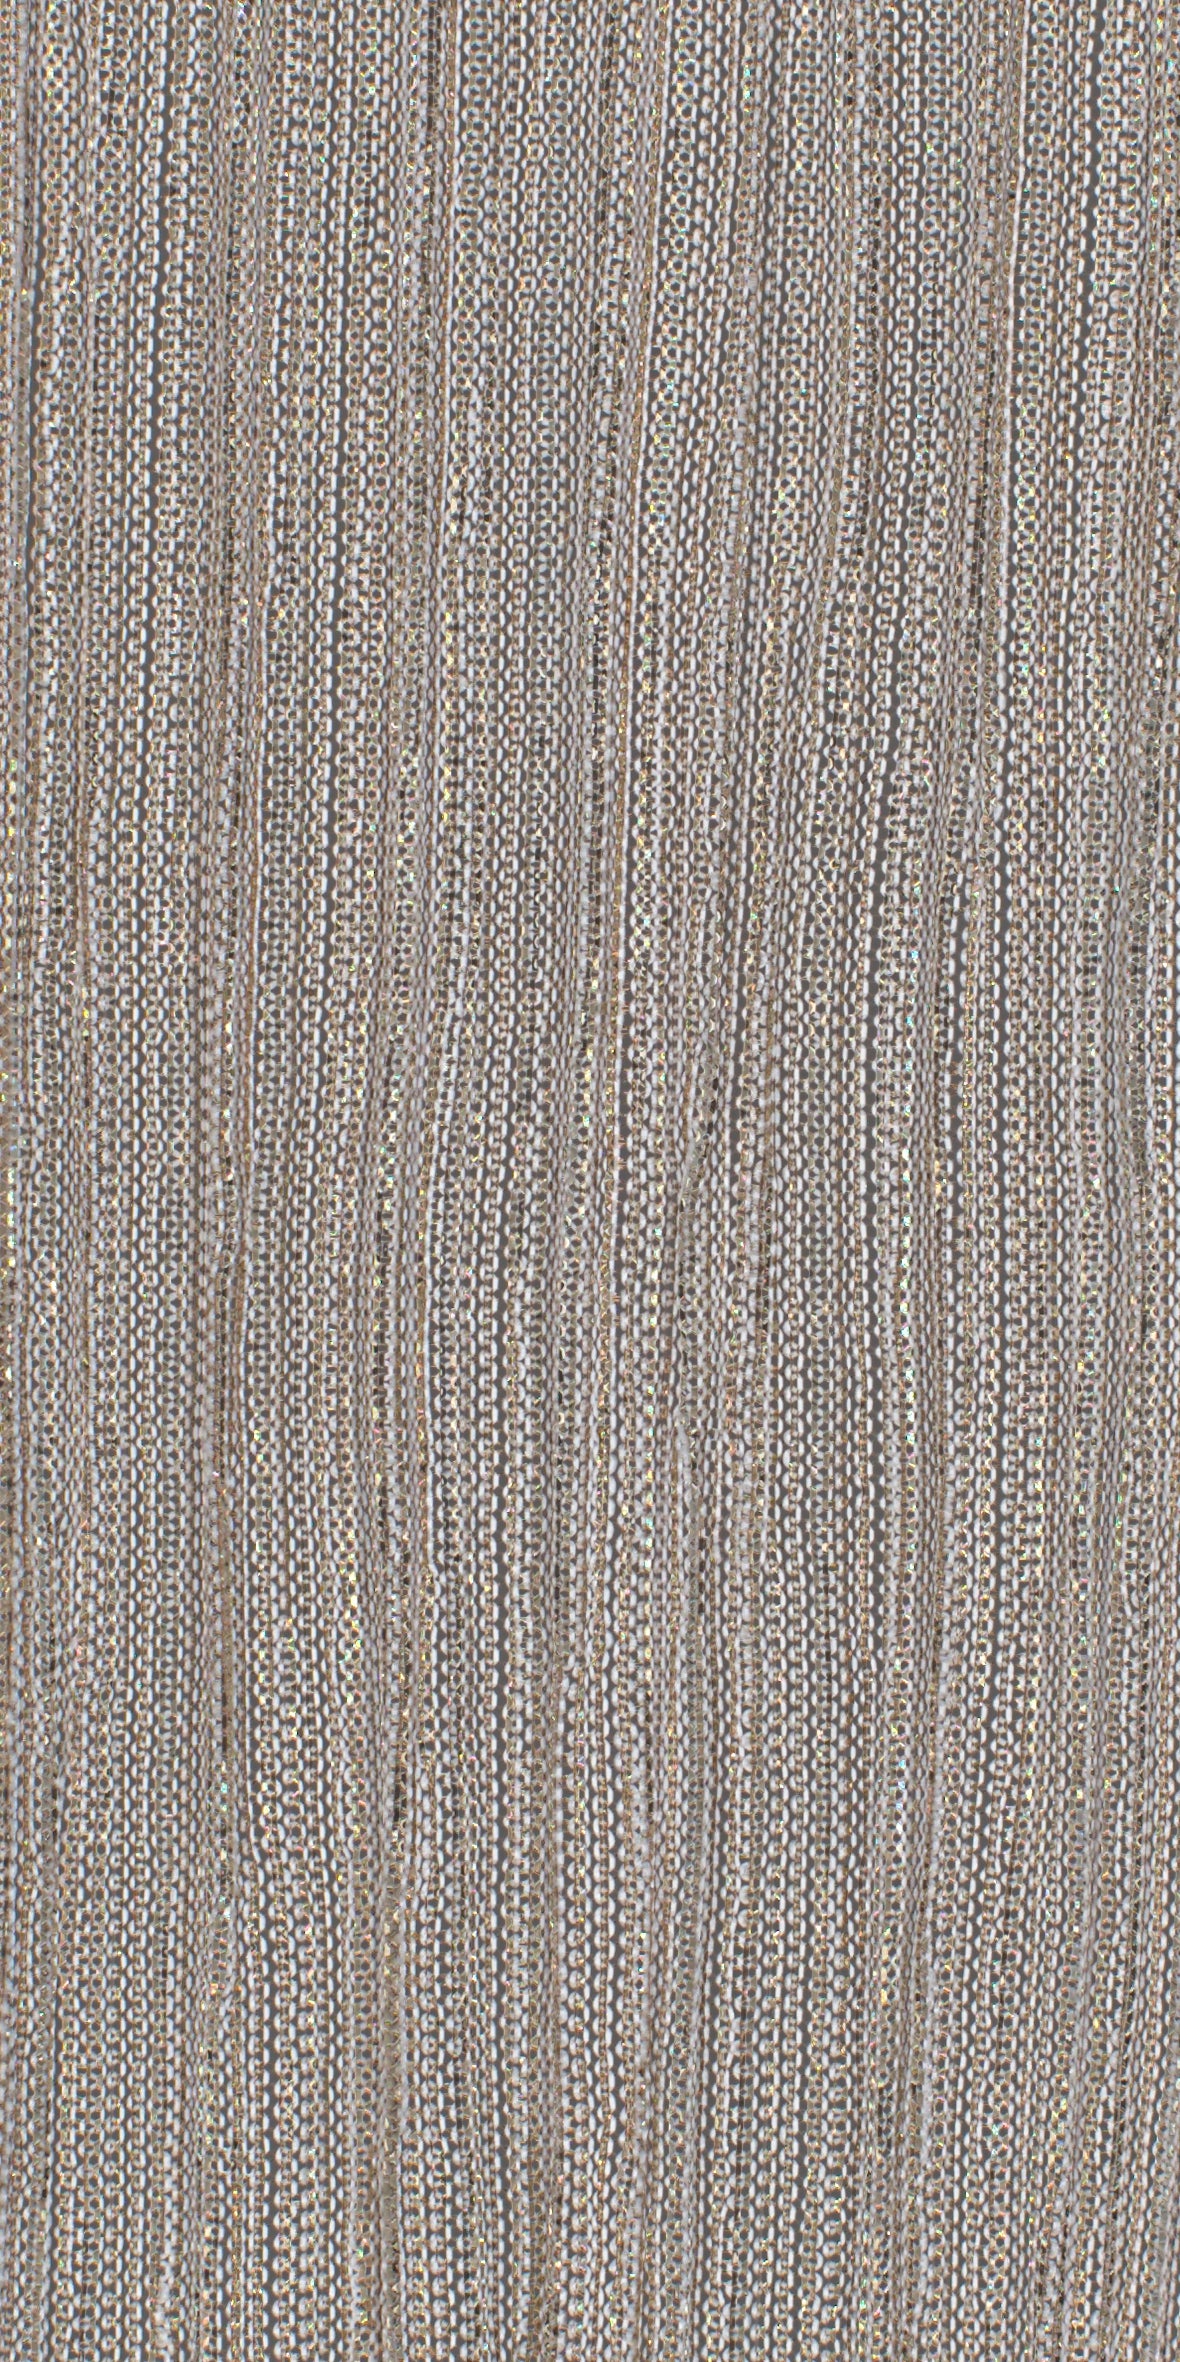 12006-01 Gold Beige Metallic Pleat Plain Dyed Blend 126g/yd 56&quot; beige blend gold knit metallic plain dyed pleat ppl new Metallic, Pleat - knit fabric - woven fabric - fabric company - fabric wholesale - fabric b2b - fabric factory - high quality fabric - hong kong fabric - fabric hk - acetate fabric - cotton fabric - linen fabric - metallic fabric - nylon fabric - polyester fabric - spandex fabric - chun wing hing - cwh hk - fabric worldwide ship - 針織布 - 梳織布 - 布料公司- 布料批發 - 香港布料 - 秦榮興